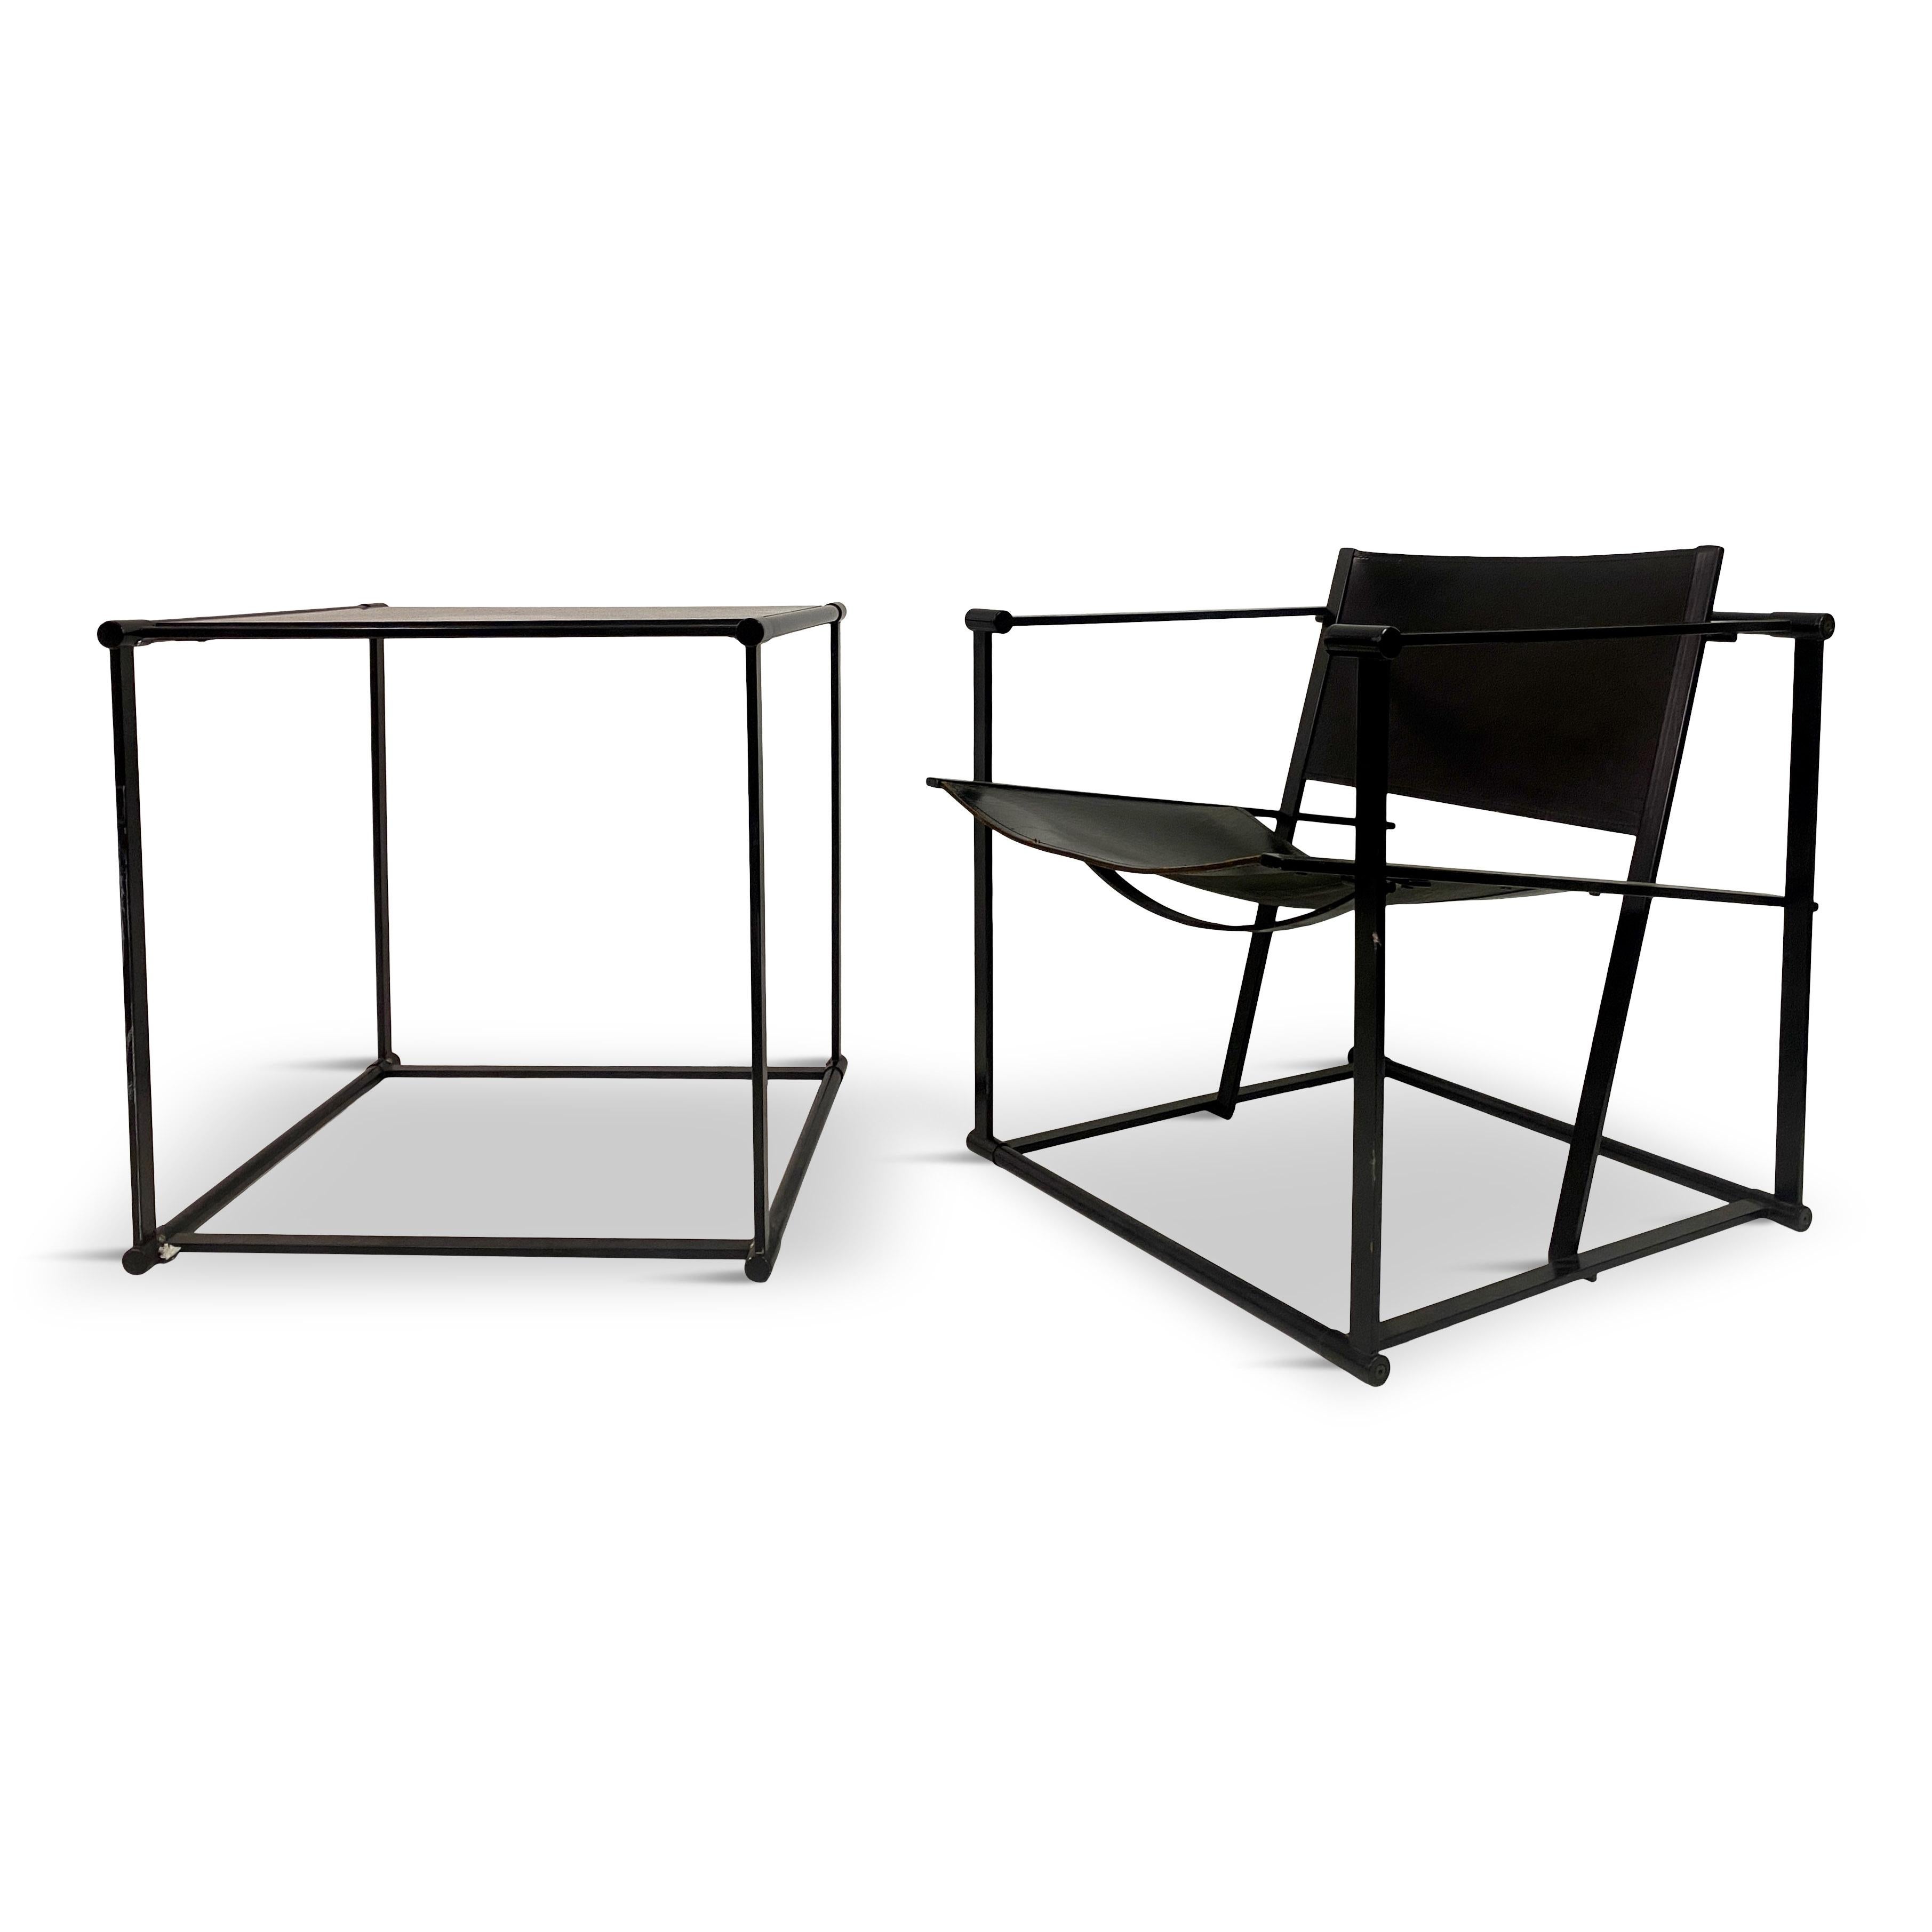 Chaise et table de salon Cube conçues par Radboud Van Beekum pour Pastoe, Pays-Bas, années 1980. 

Le fauteuil et la table ont un caractère géométrique fort. S'inscrivant dans la tradition du mouvement De Stijl, la série FM60 s'inspire des créations